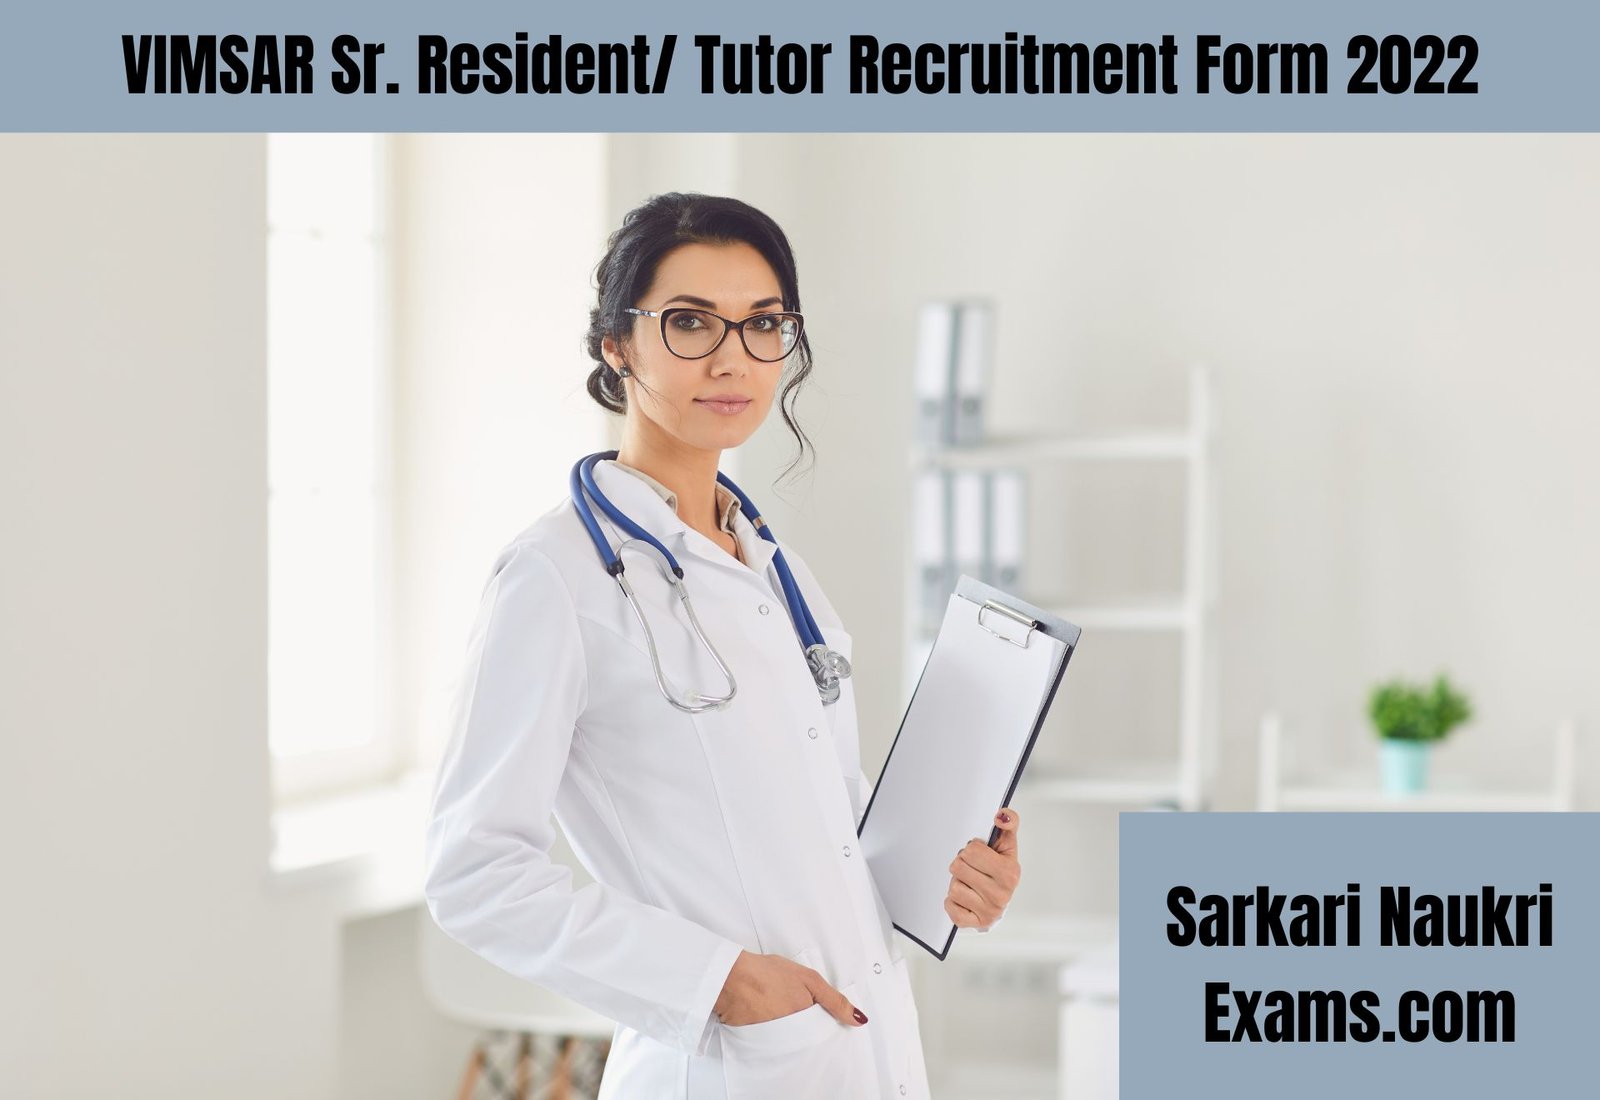 VIMSAR Sr. Resident/ Tutor Recruitment Form 2022 | Interview Based Job